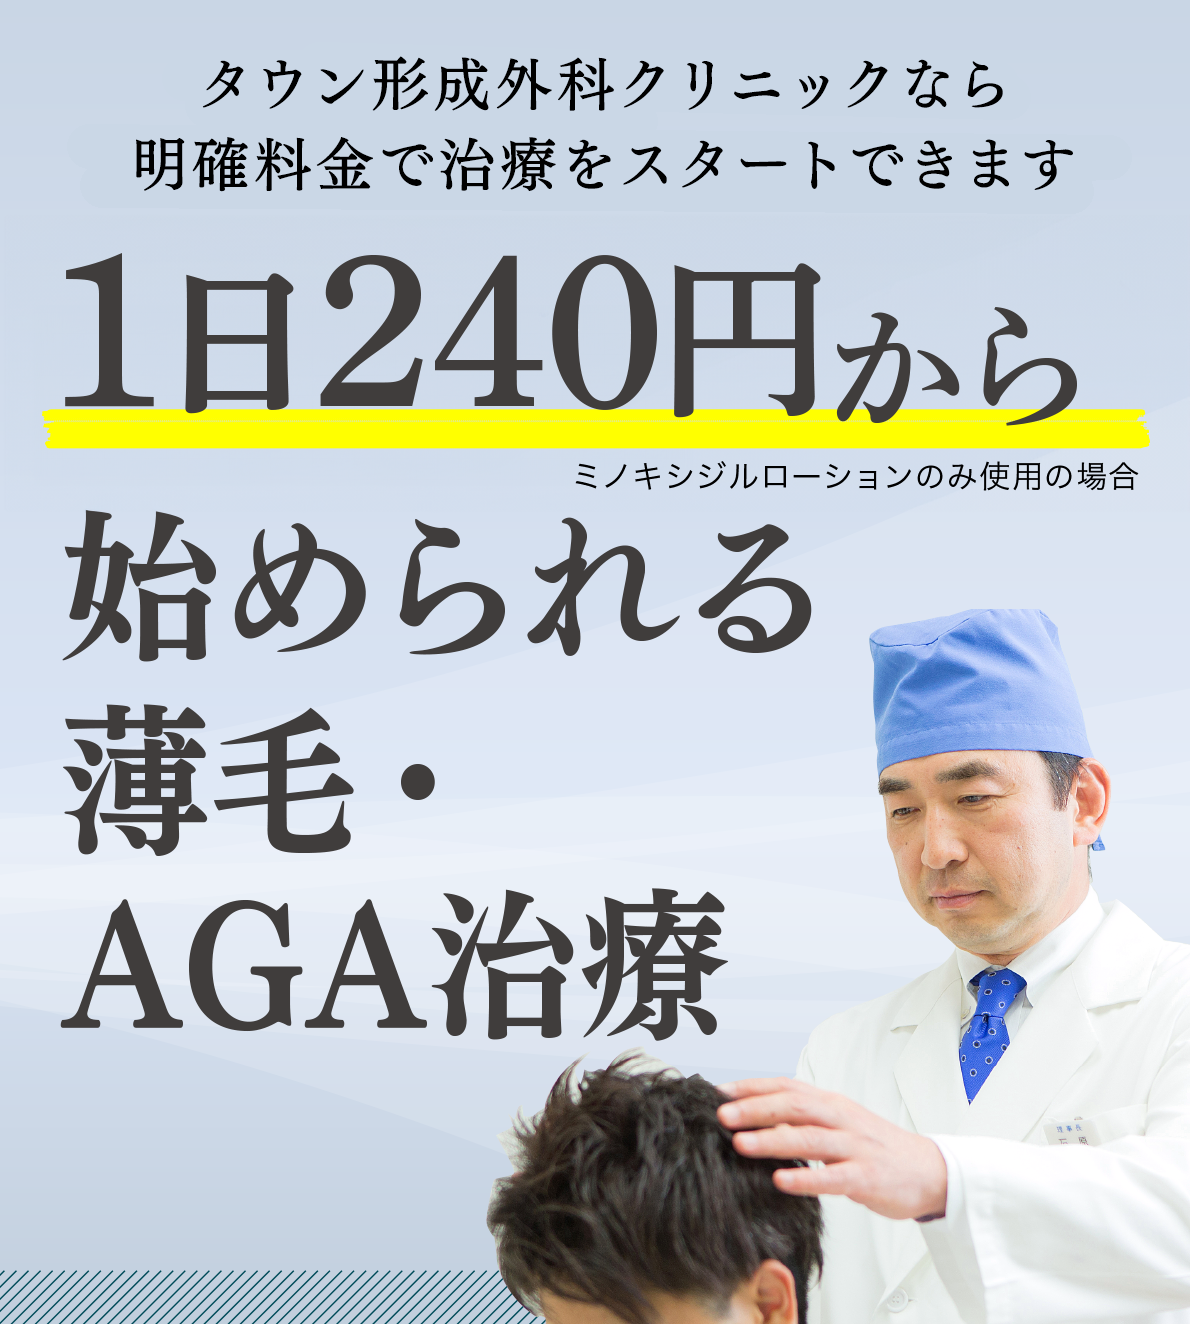 タウン形成外科クリニックなら明確料金で治療をスタートできます。1日240円から始められる薄毛・AGA治療